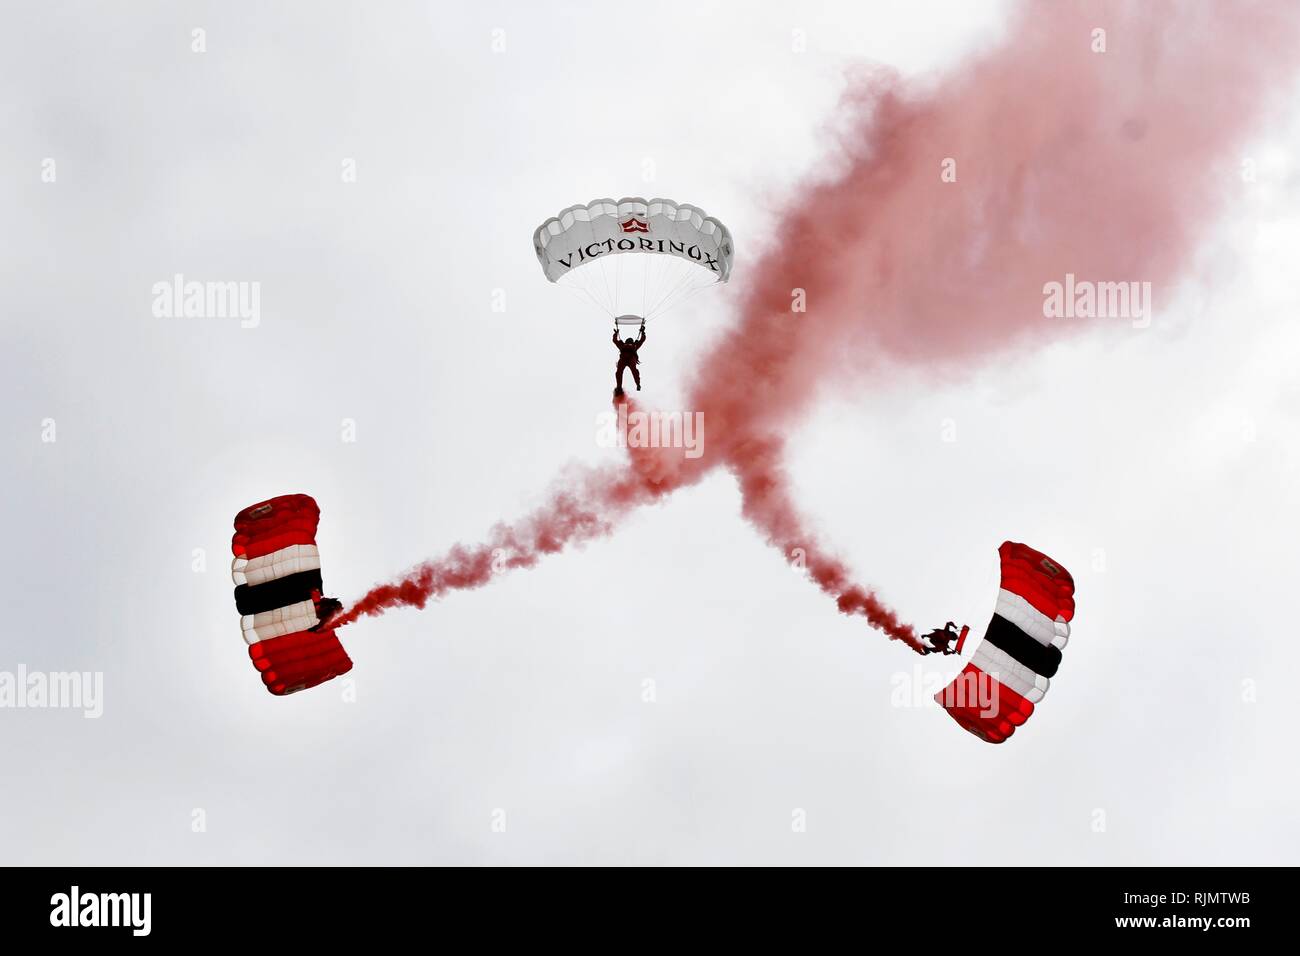 I diavoli rossi, il paracadute ufficiale team display dell'esercito britannico e il Reggimento paracadutisti, effettuare una spettacolare caduta libera caduta con il paracadute. Foto Stock